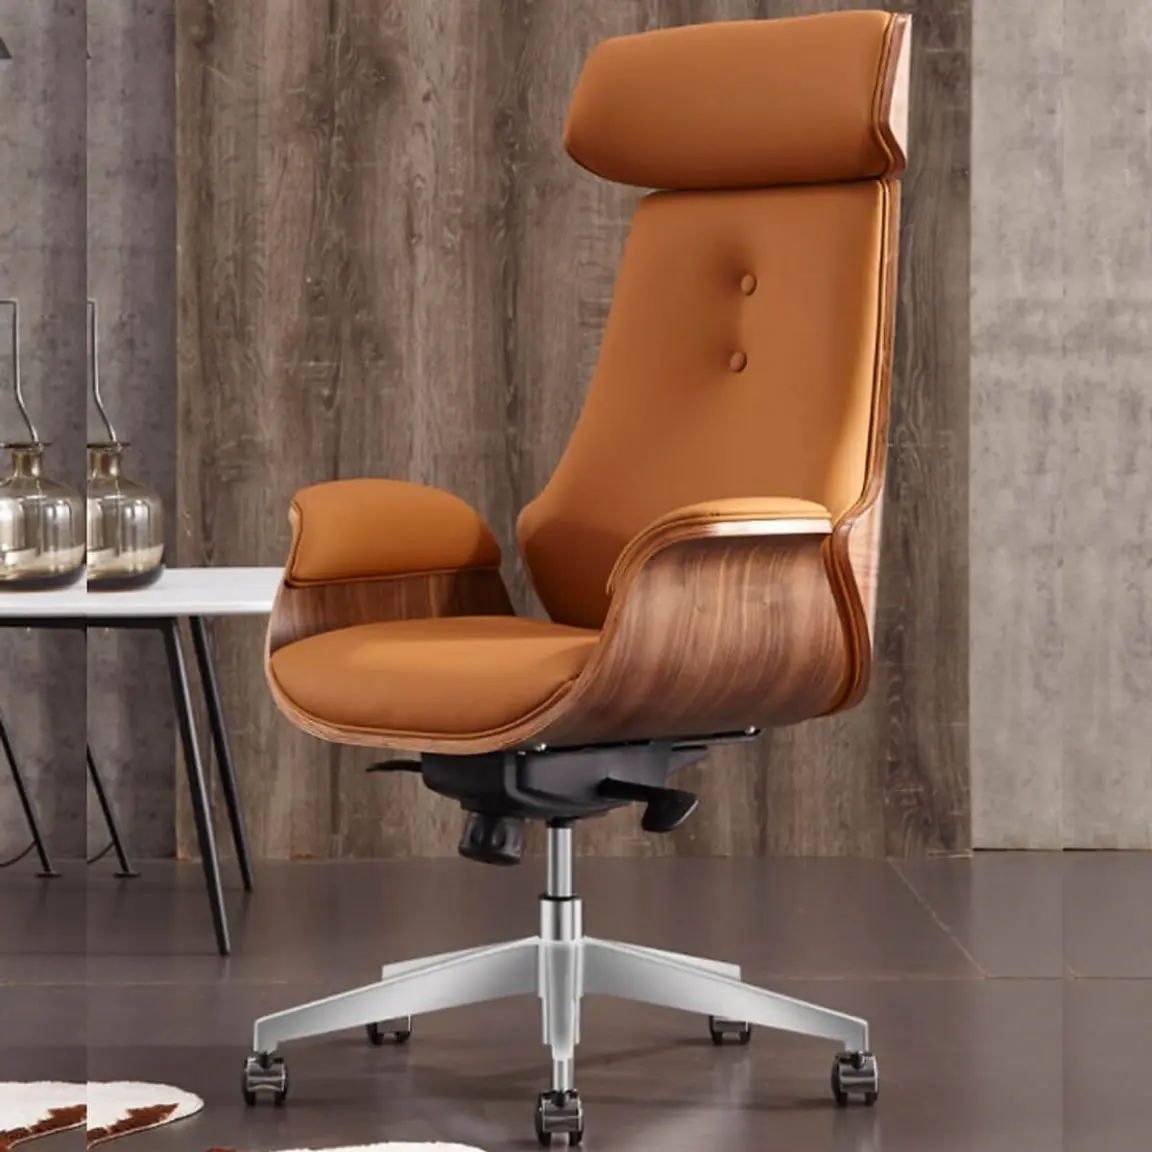 Lựa chọn ghế gỗ giám đốc có kích thước phù hợp, cân đối với nơi làm việc